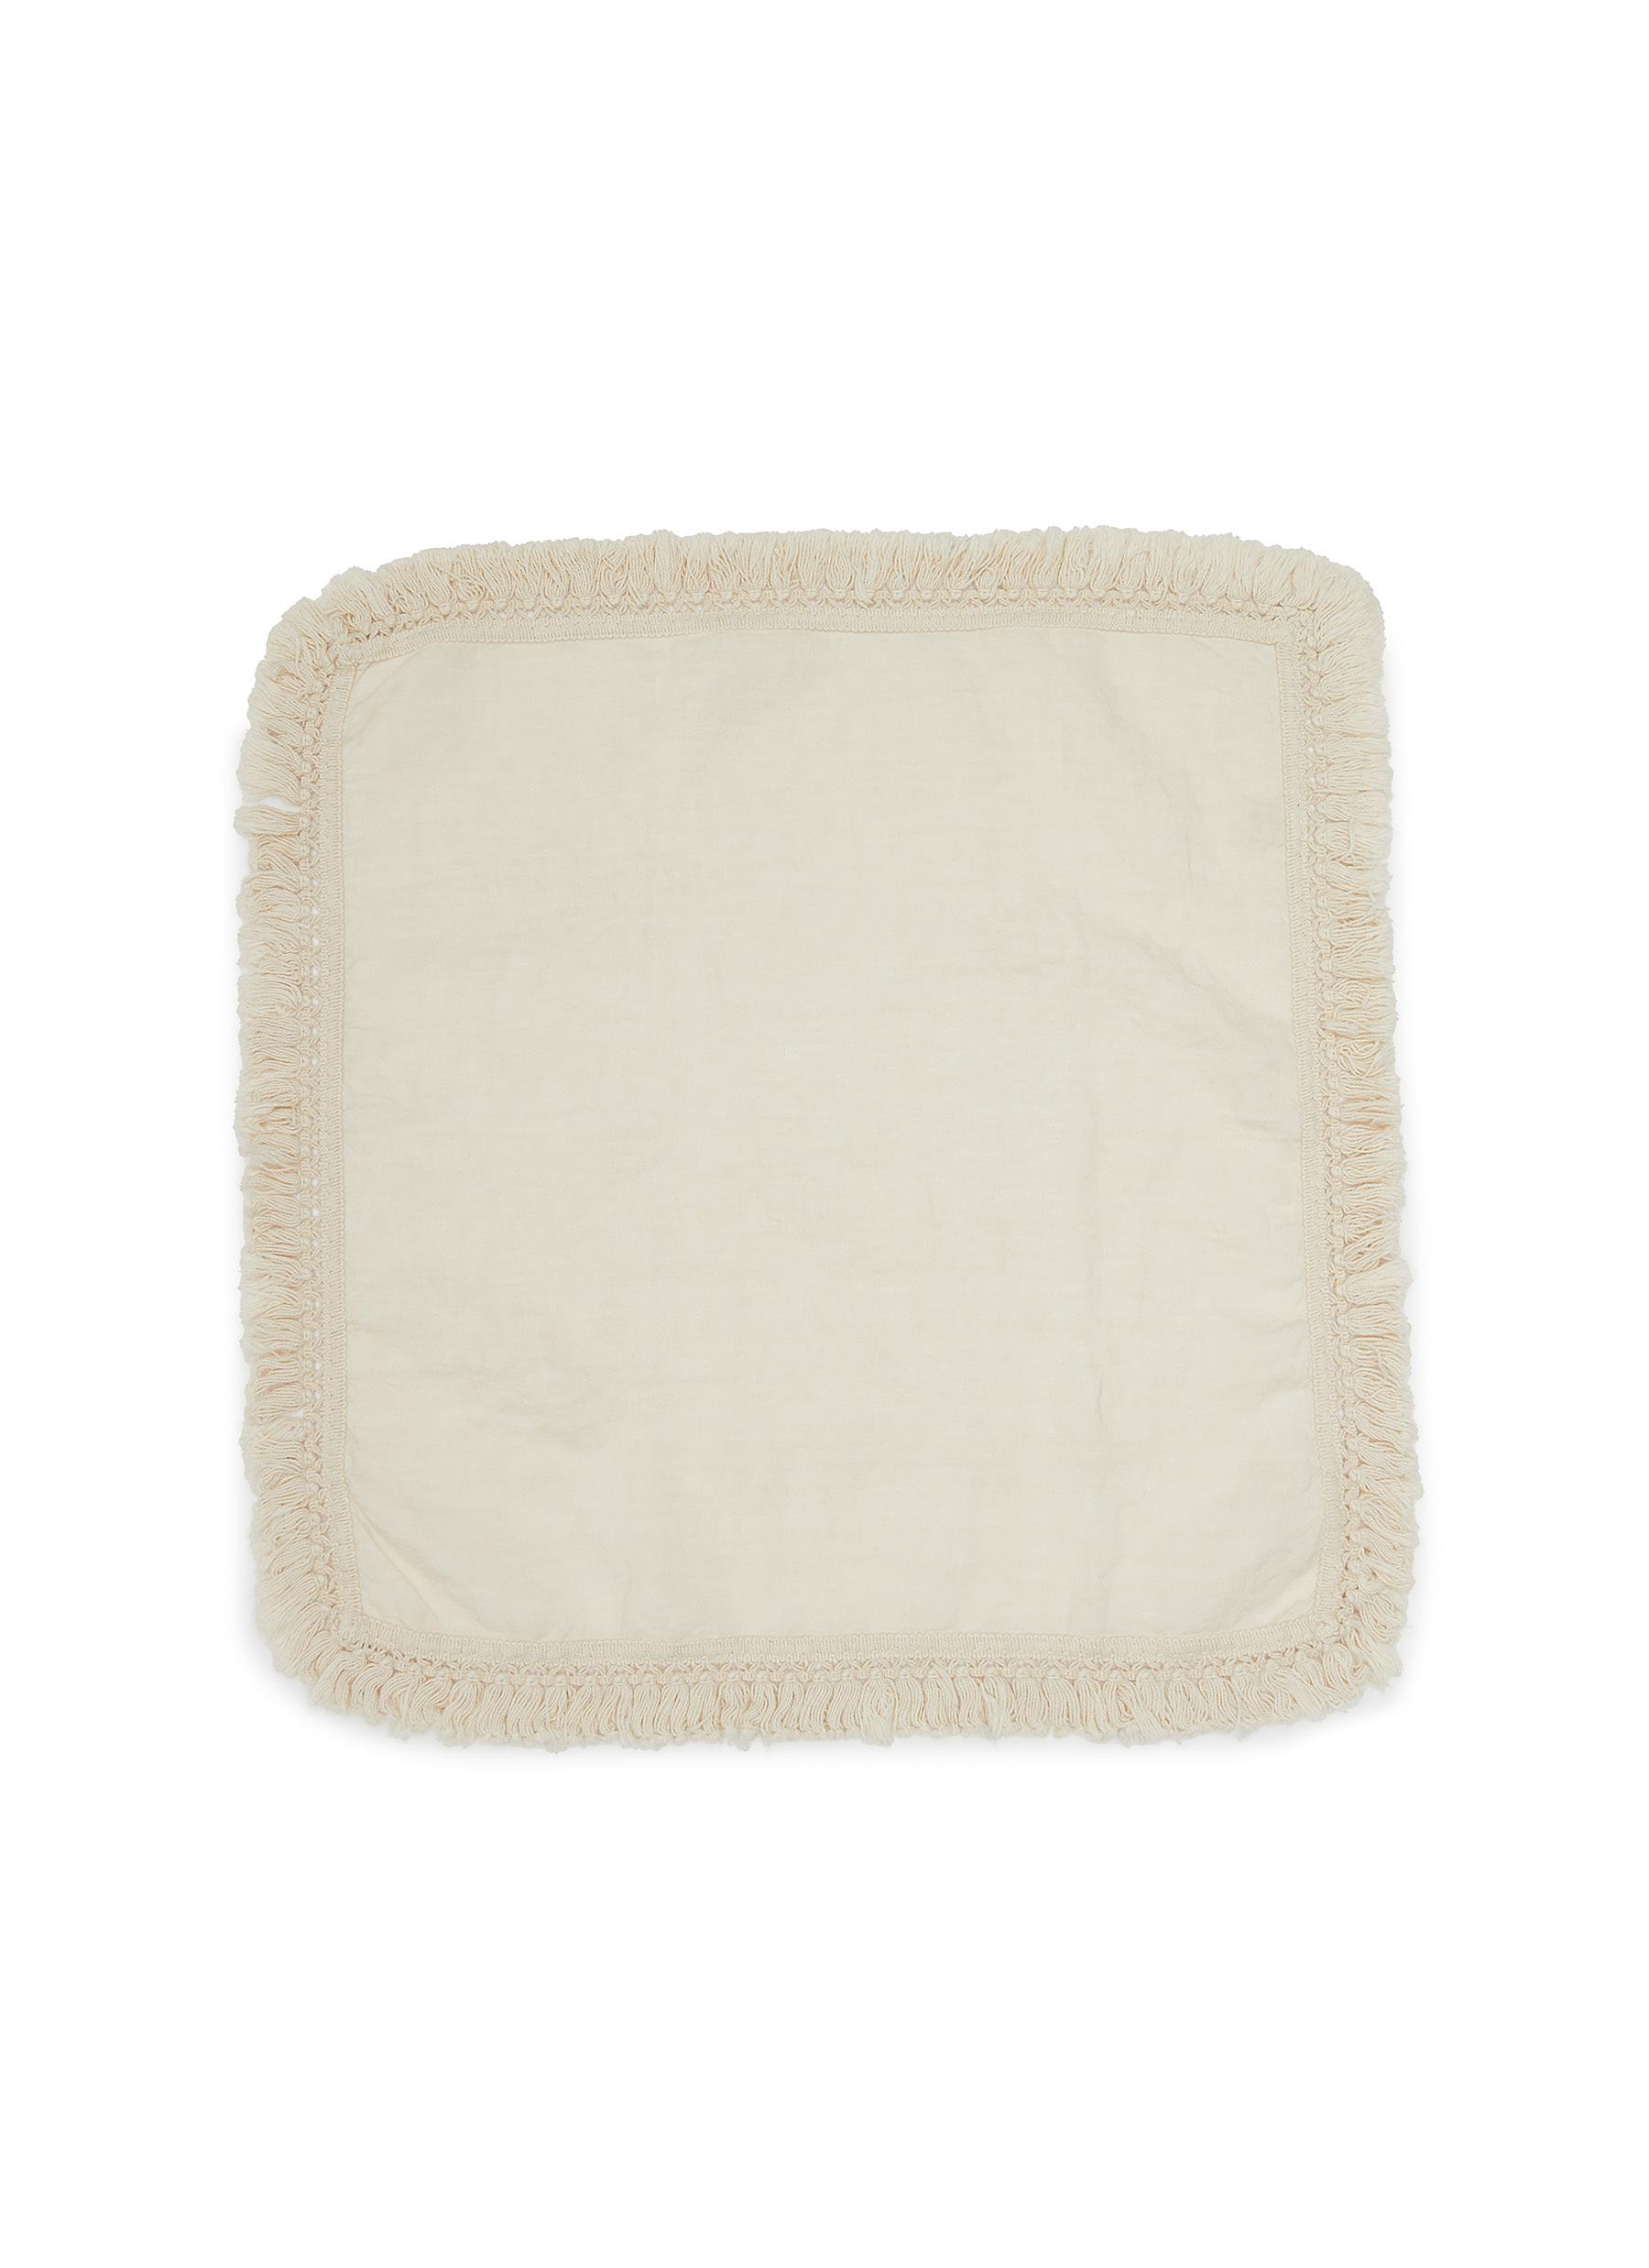 Short Fringe Linen Napkin - Cream